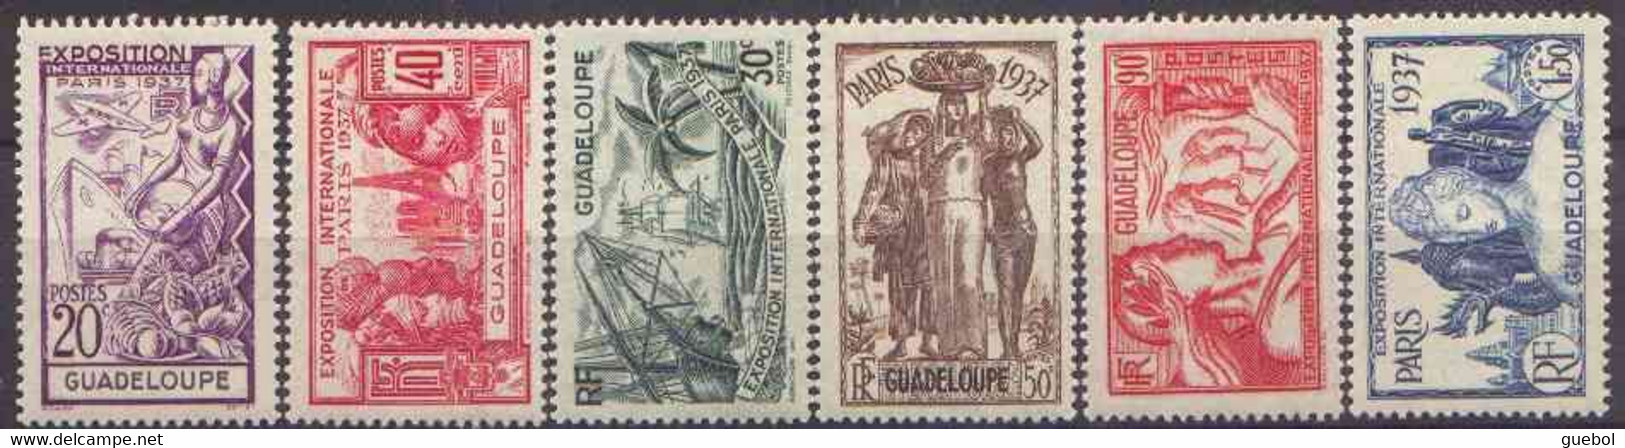 Détail De La Série Exposition Internationale De Paris * Guadeloupe N° 133 à 138 - 1937 Exposition Internationale De Paris